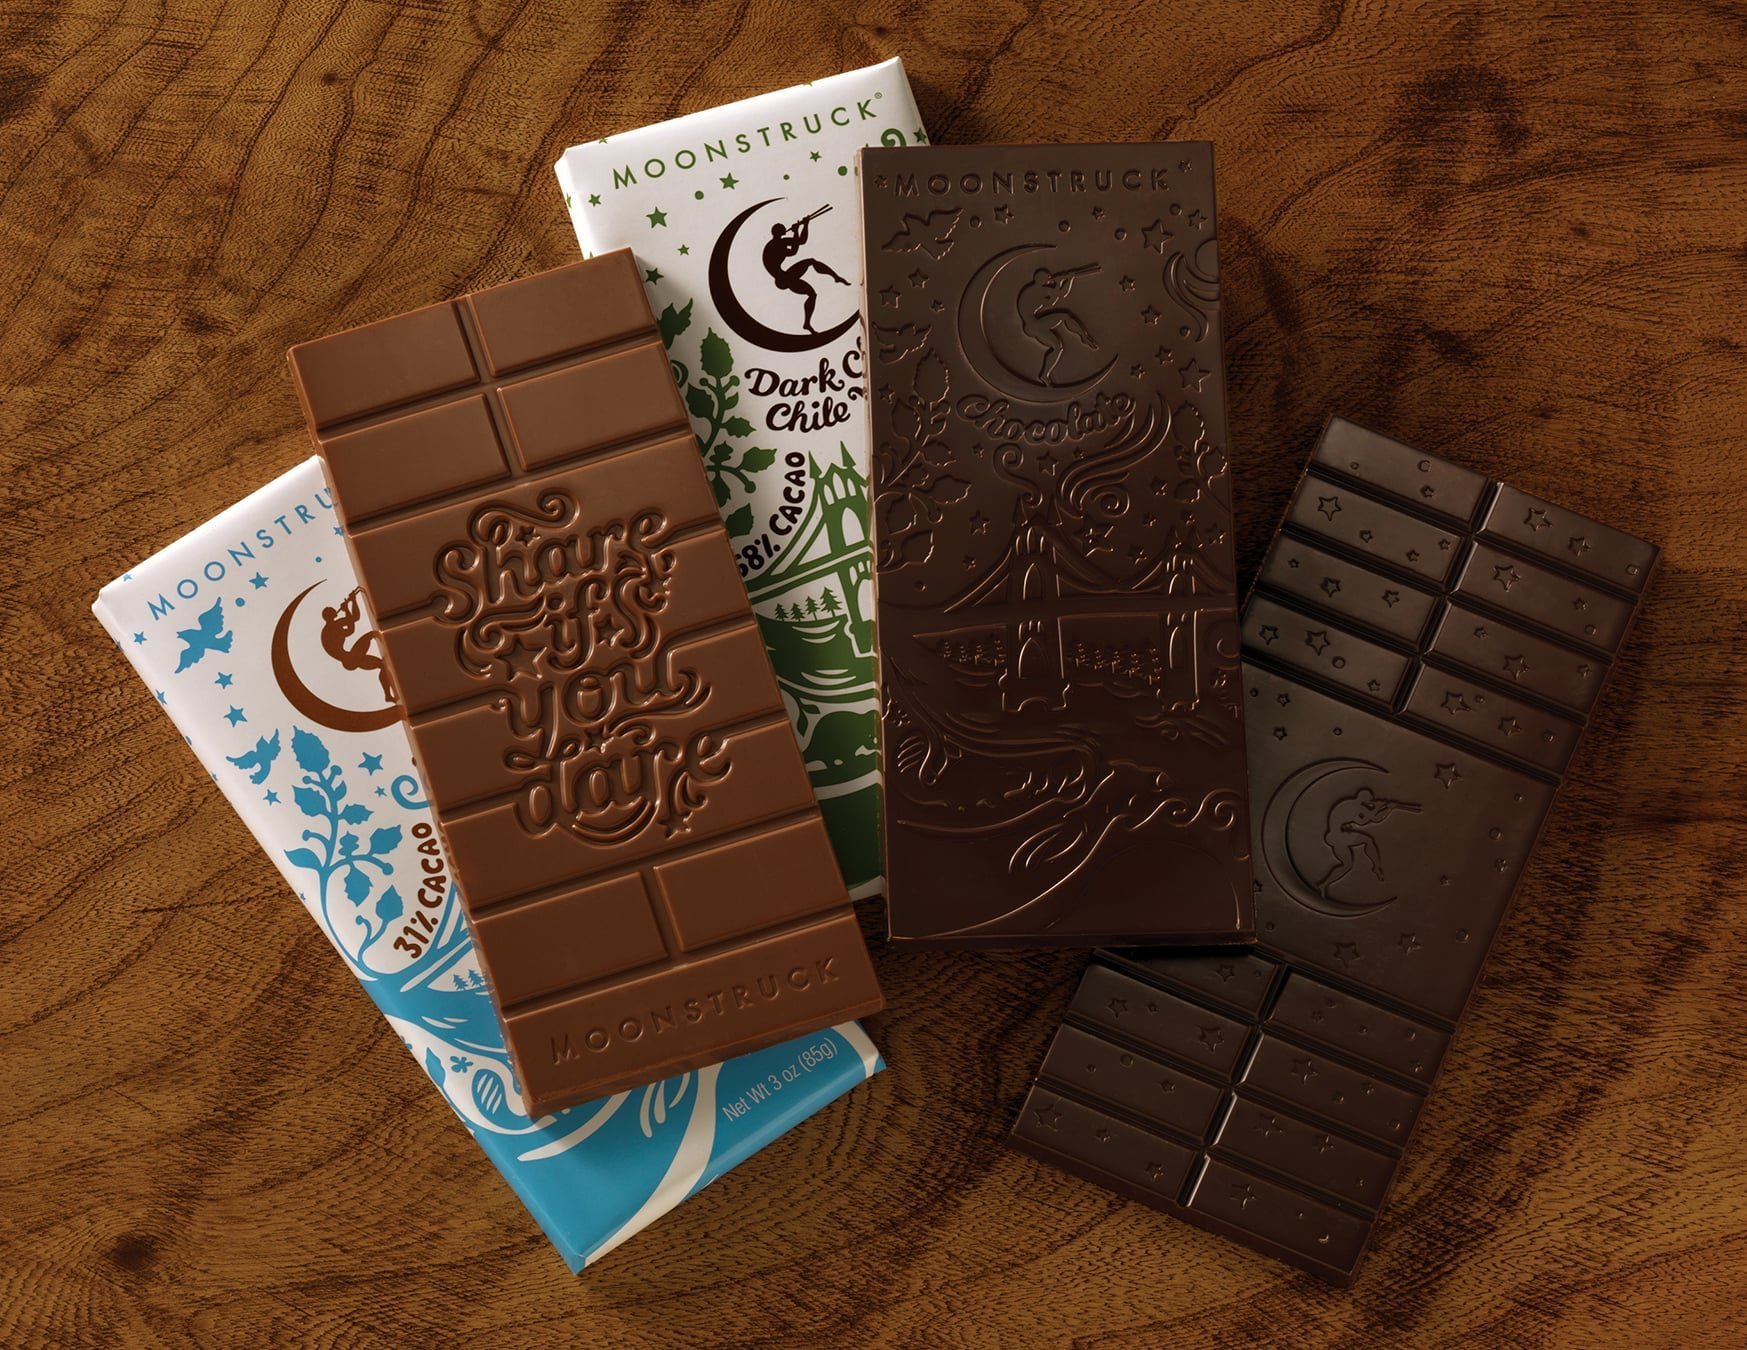 Под шоколад. Плитка шоколада в картонной упаковке. Шоколад в упаковке. Плитка шоколада в упаковке. Шоколад плиточный в упаковке.